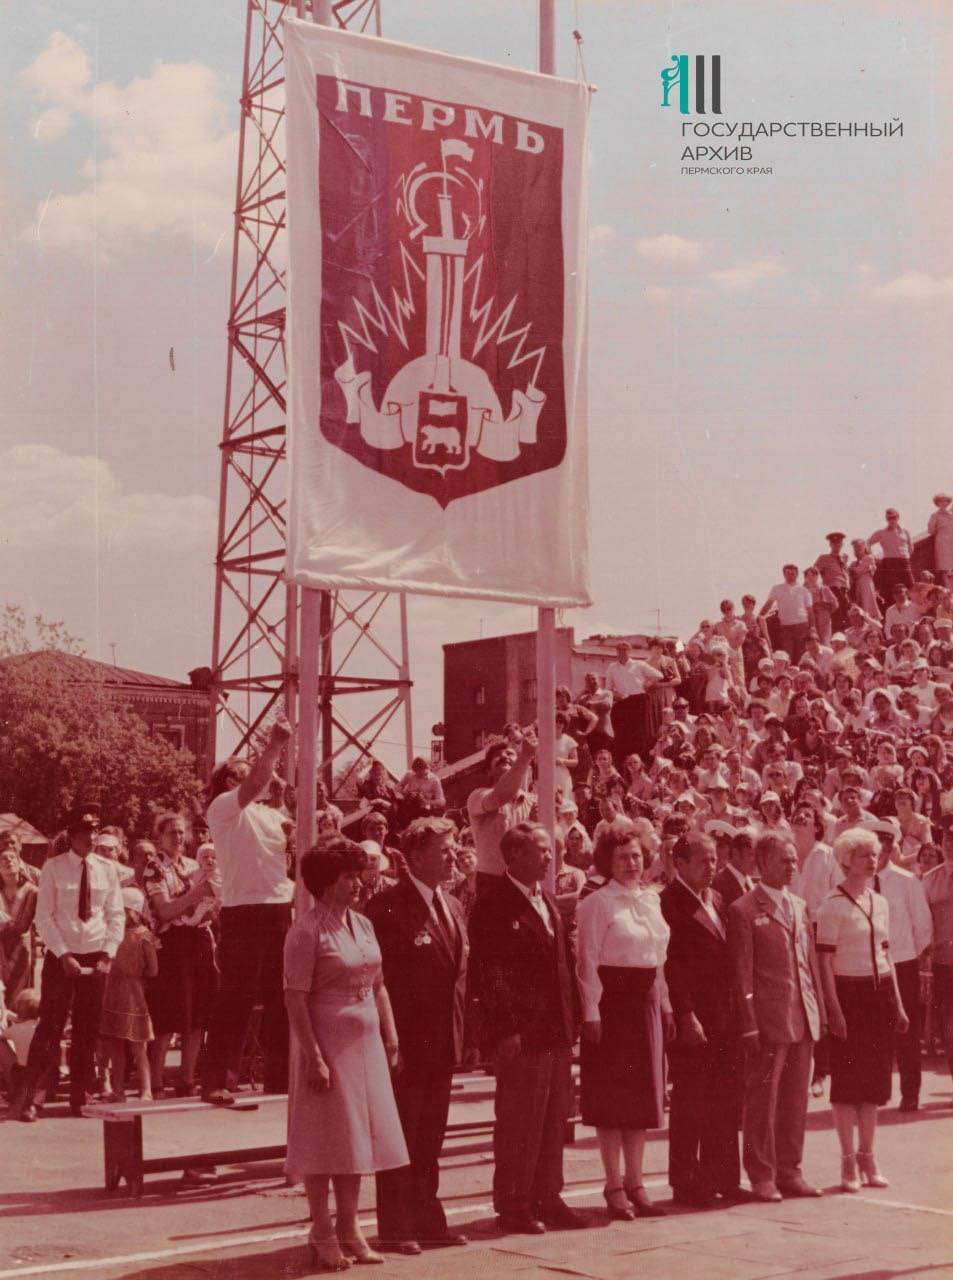 Из фотоальбома о праздновании 260-летия Перми, 19 июня 1983 года